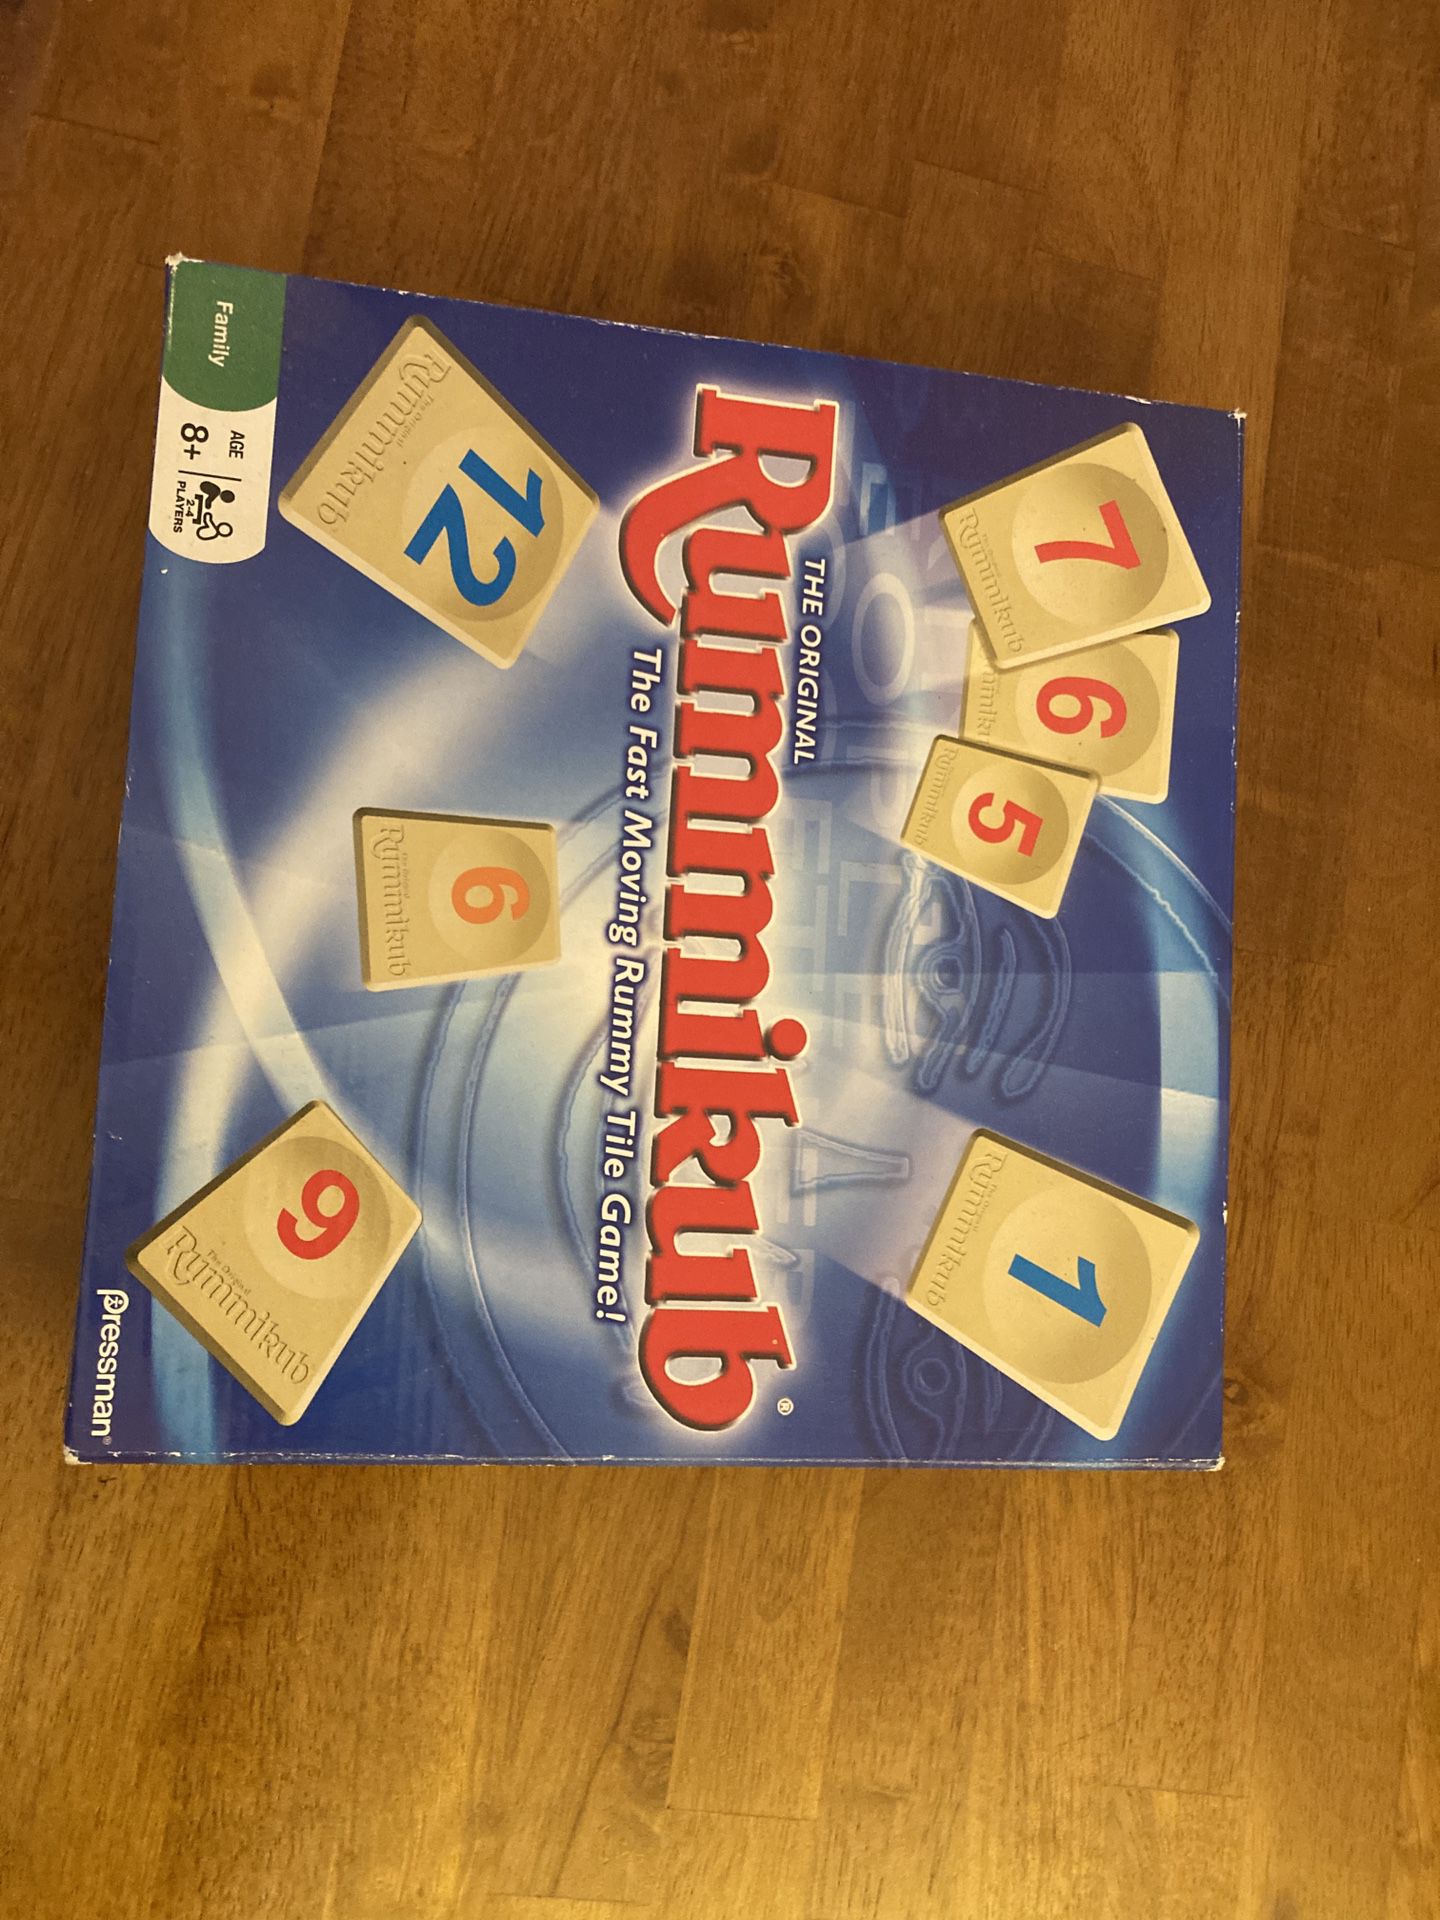 Rummikub Game 